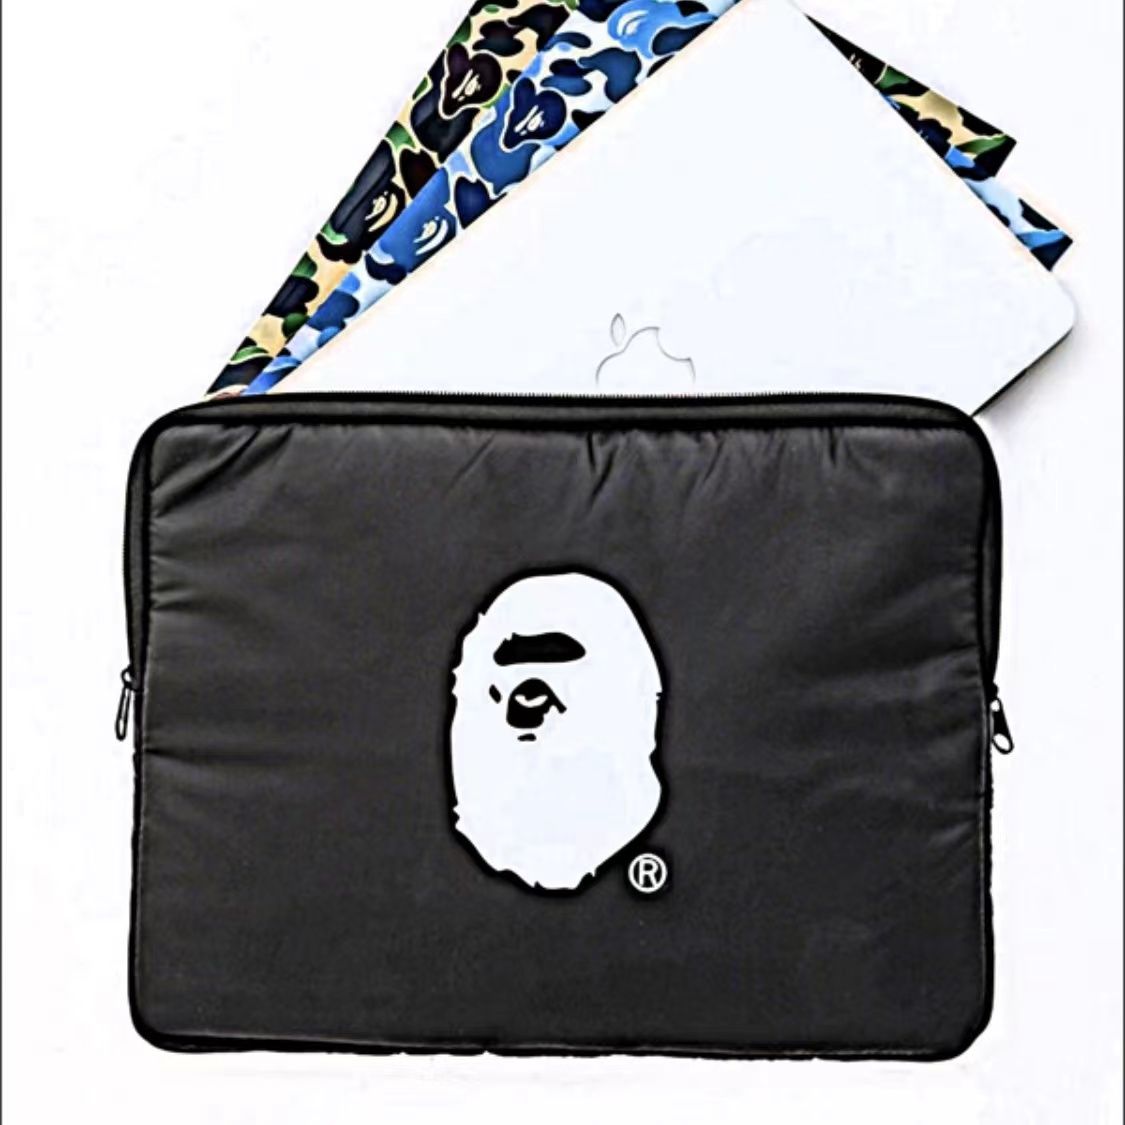 BAPE® Laptop Bag (13in) / Ipad Bag Black (HẾT HÀNG)